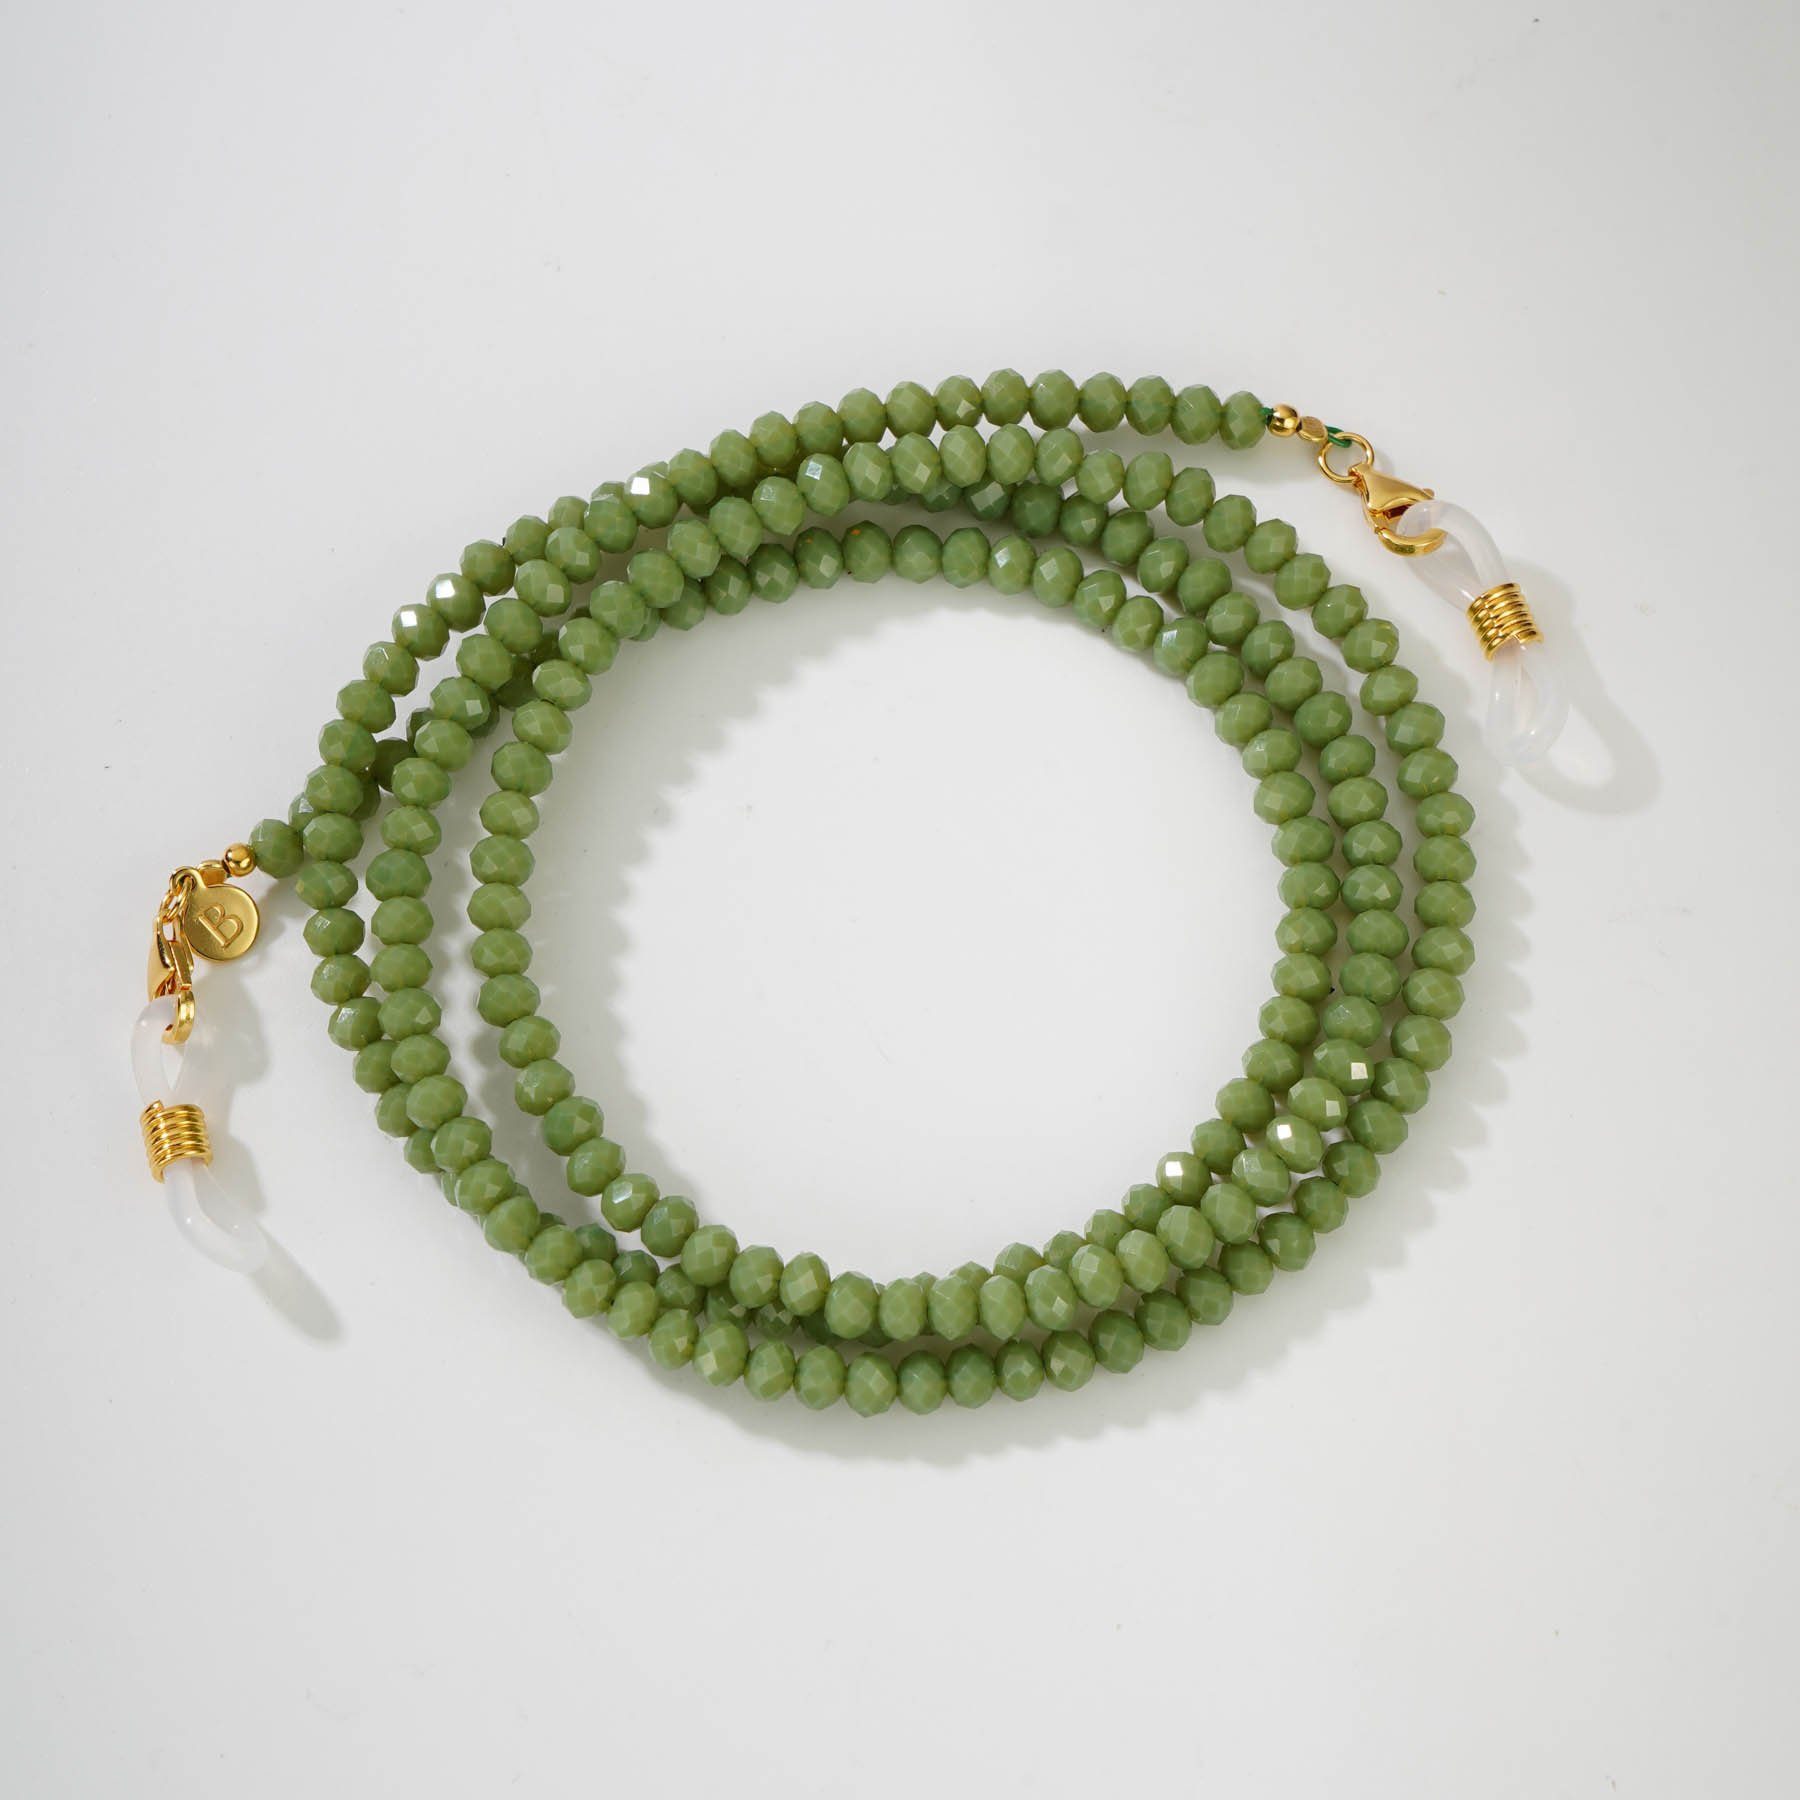 Brandlinger Perlenkette Brillenkette Kalamata, Brillenkette Silber 925 vergoldet mit olivgrünen Glasperlen